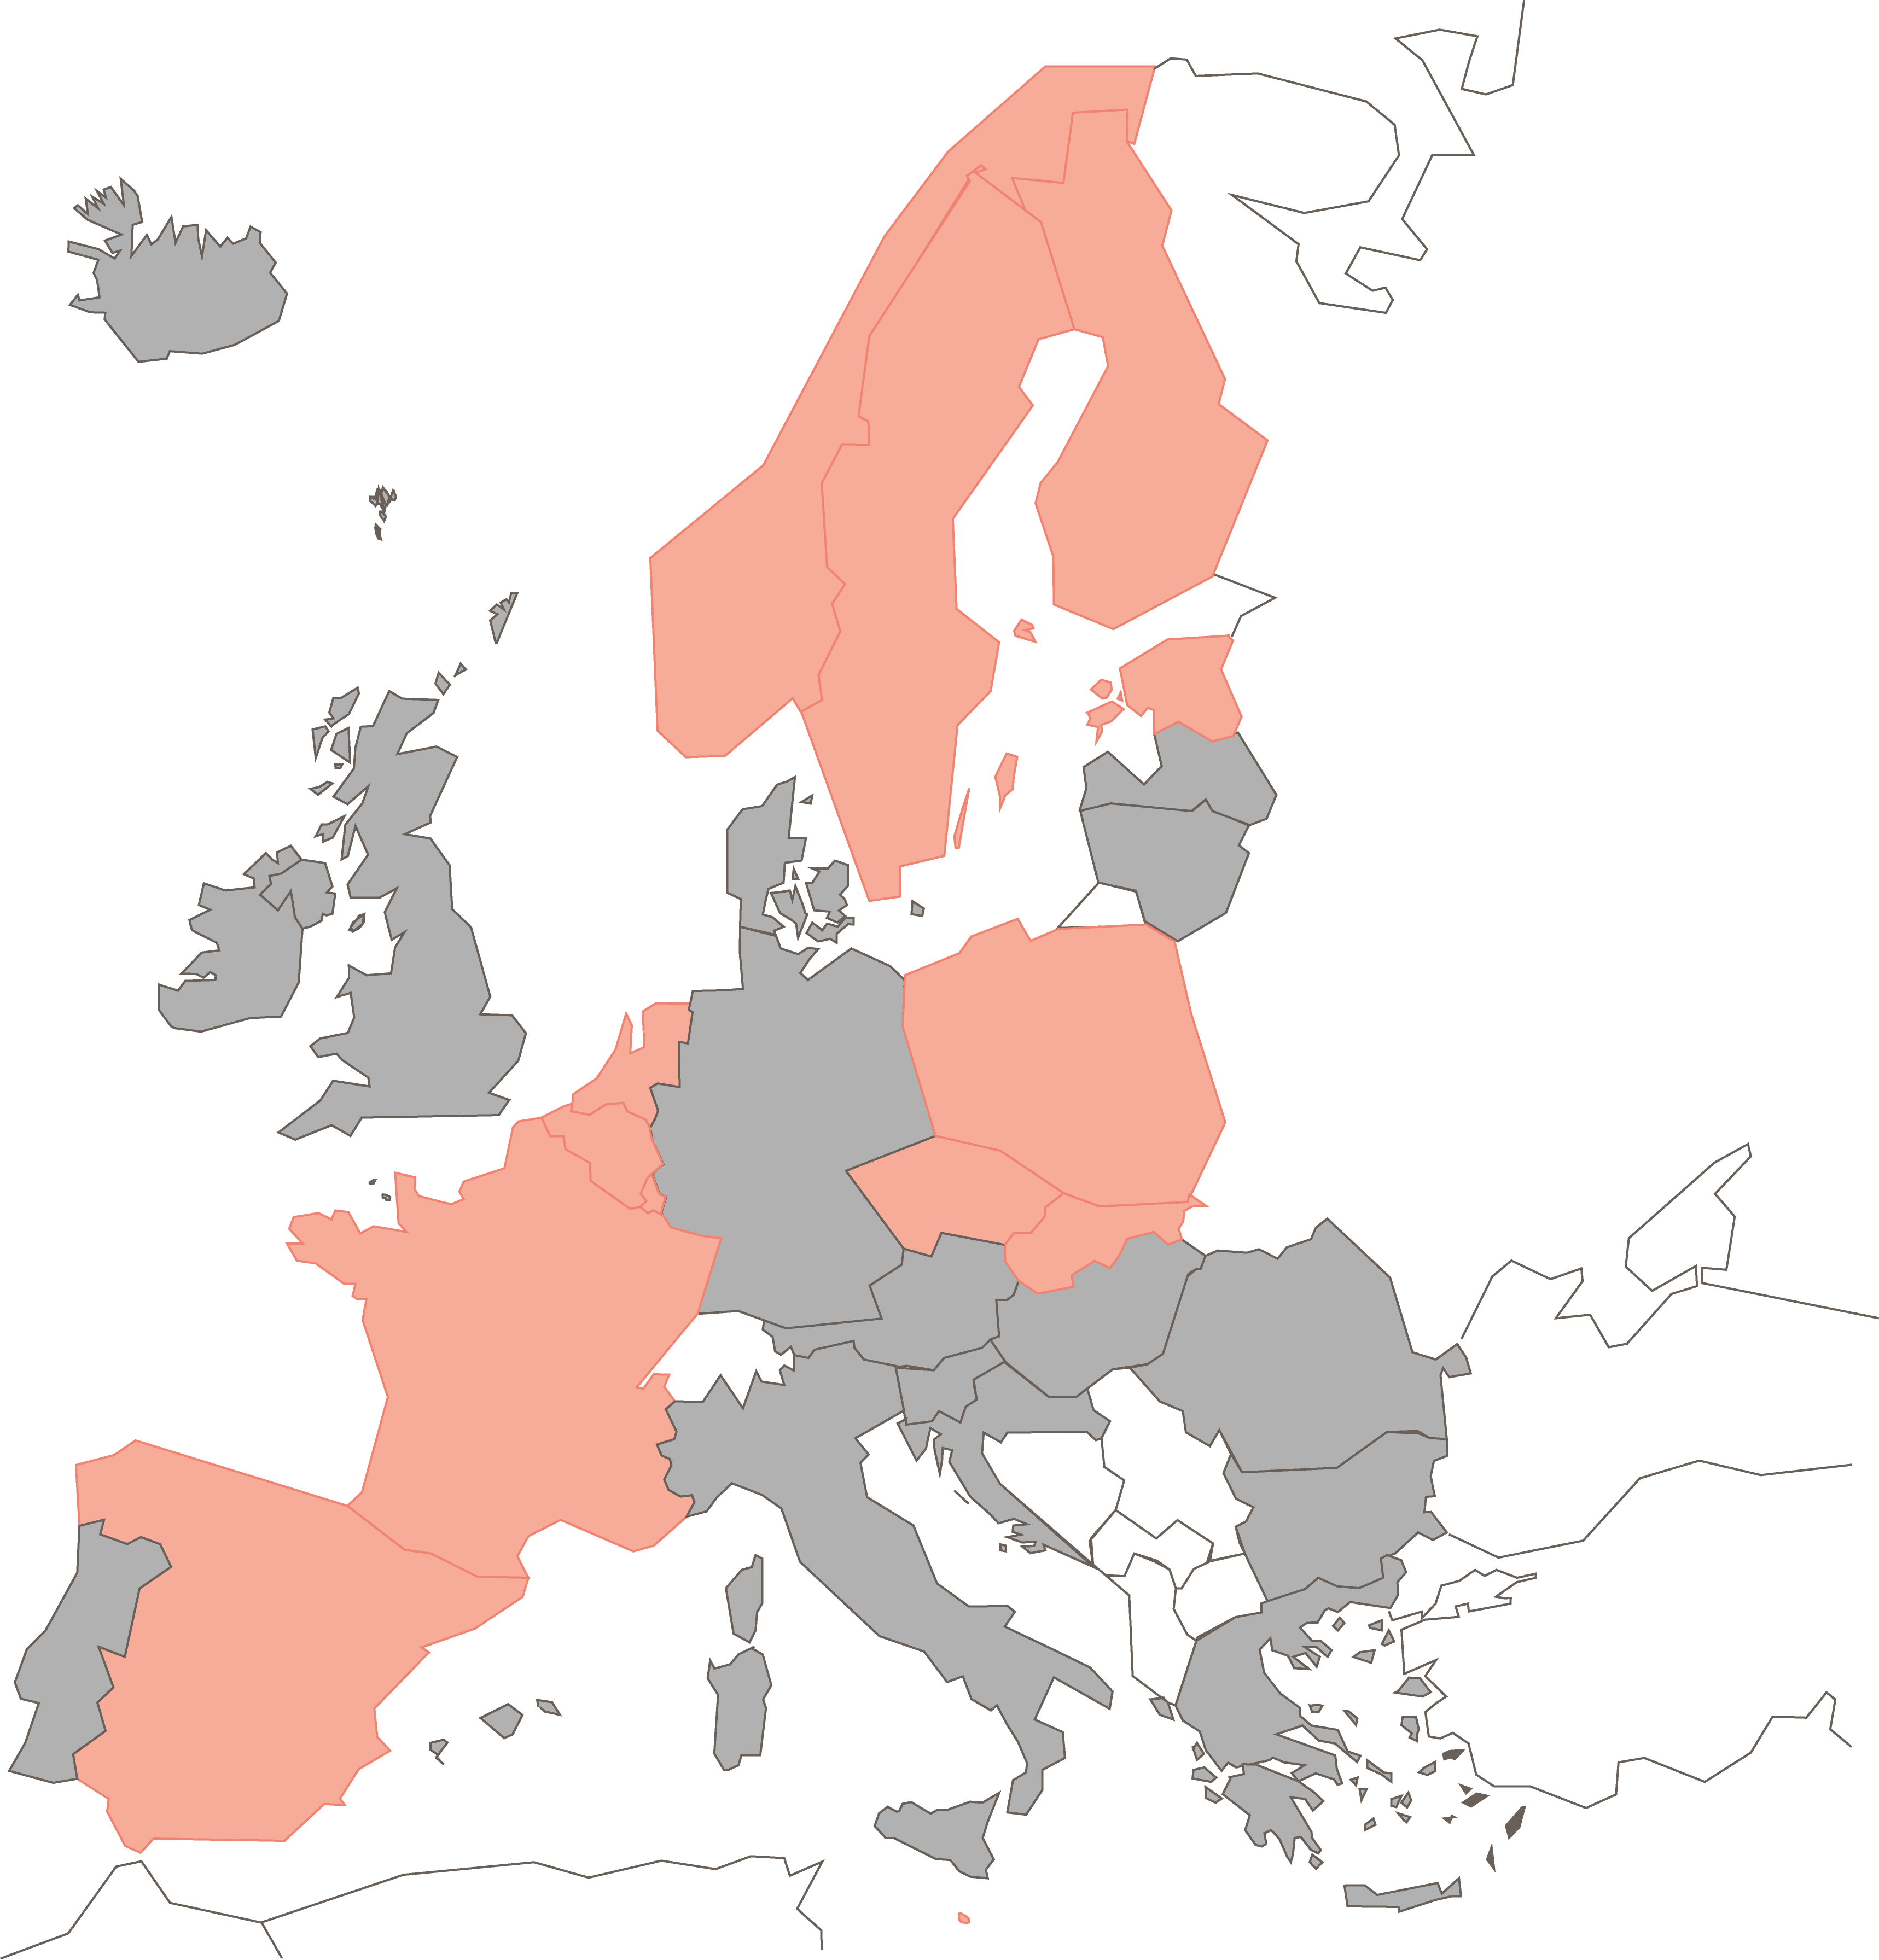 Europakarta där de länder som är anslutna är markerade med rosa färg, övriga länder är gråa.